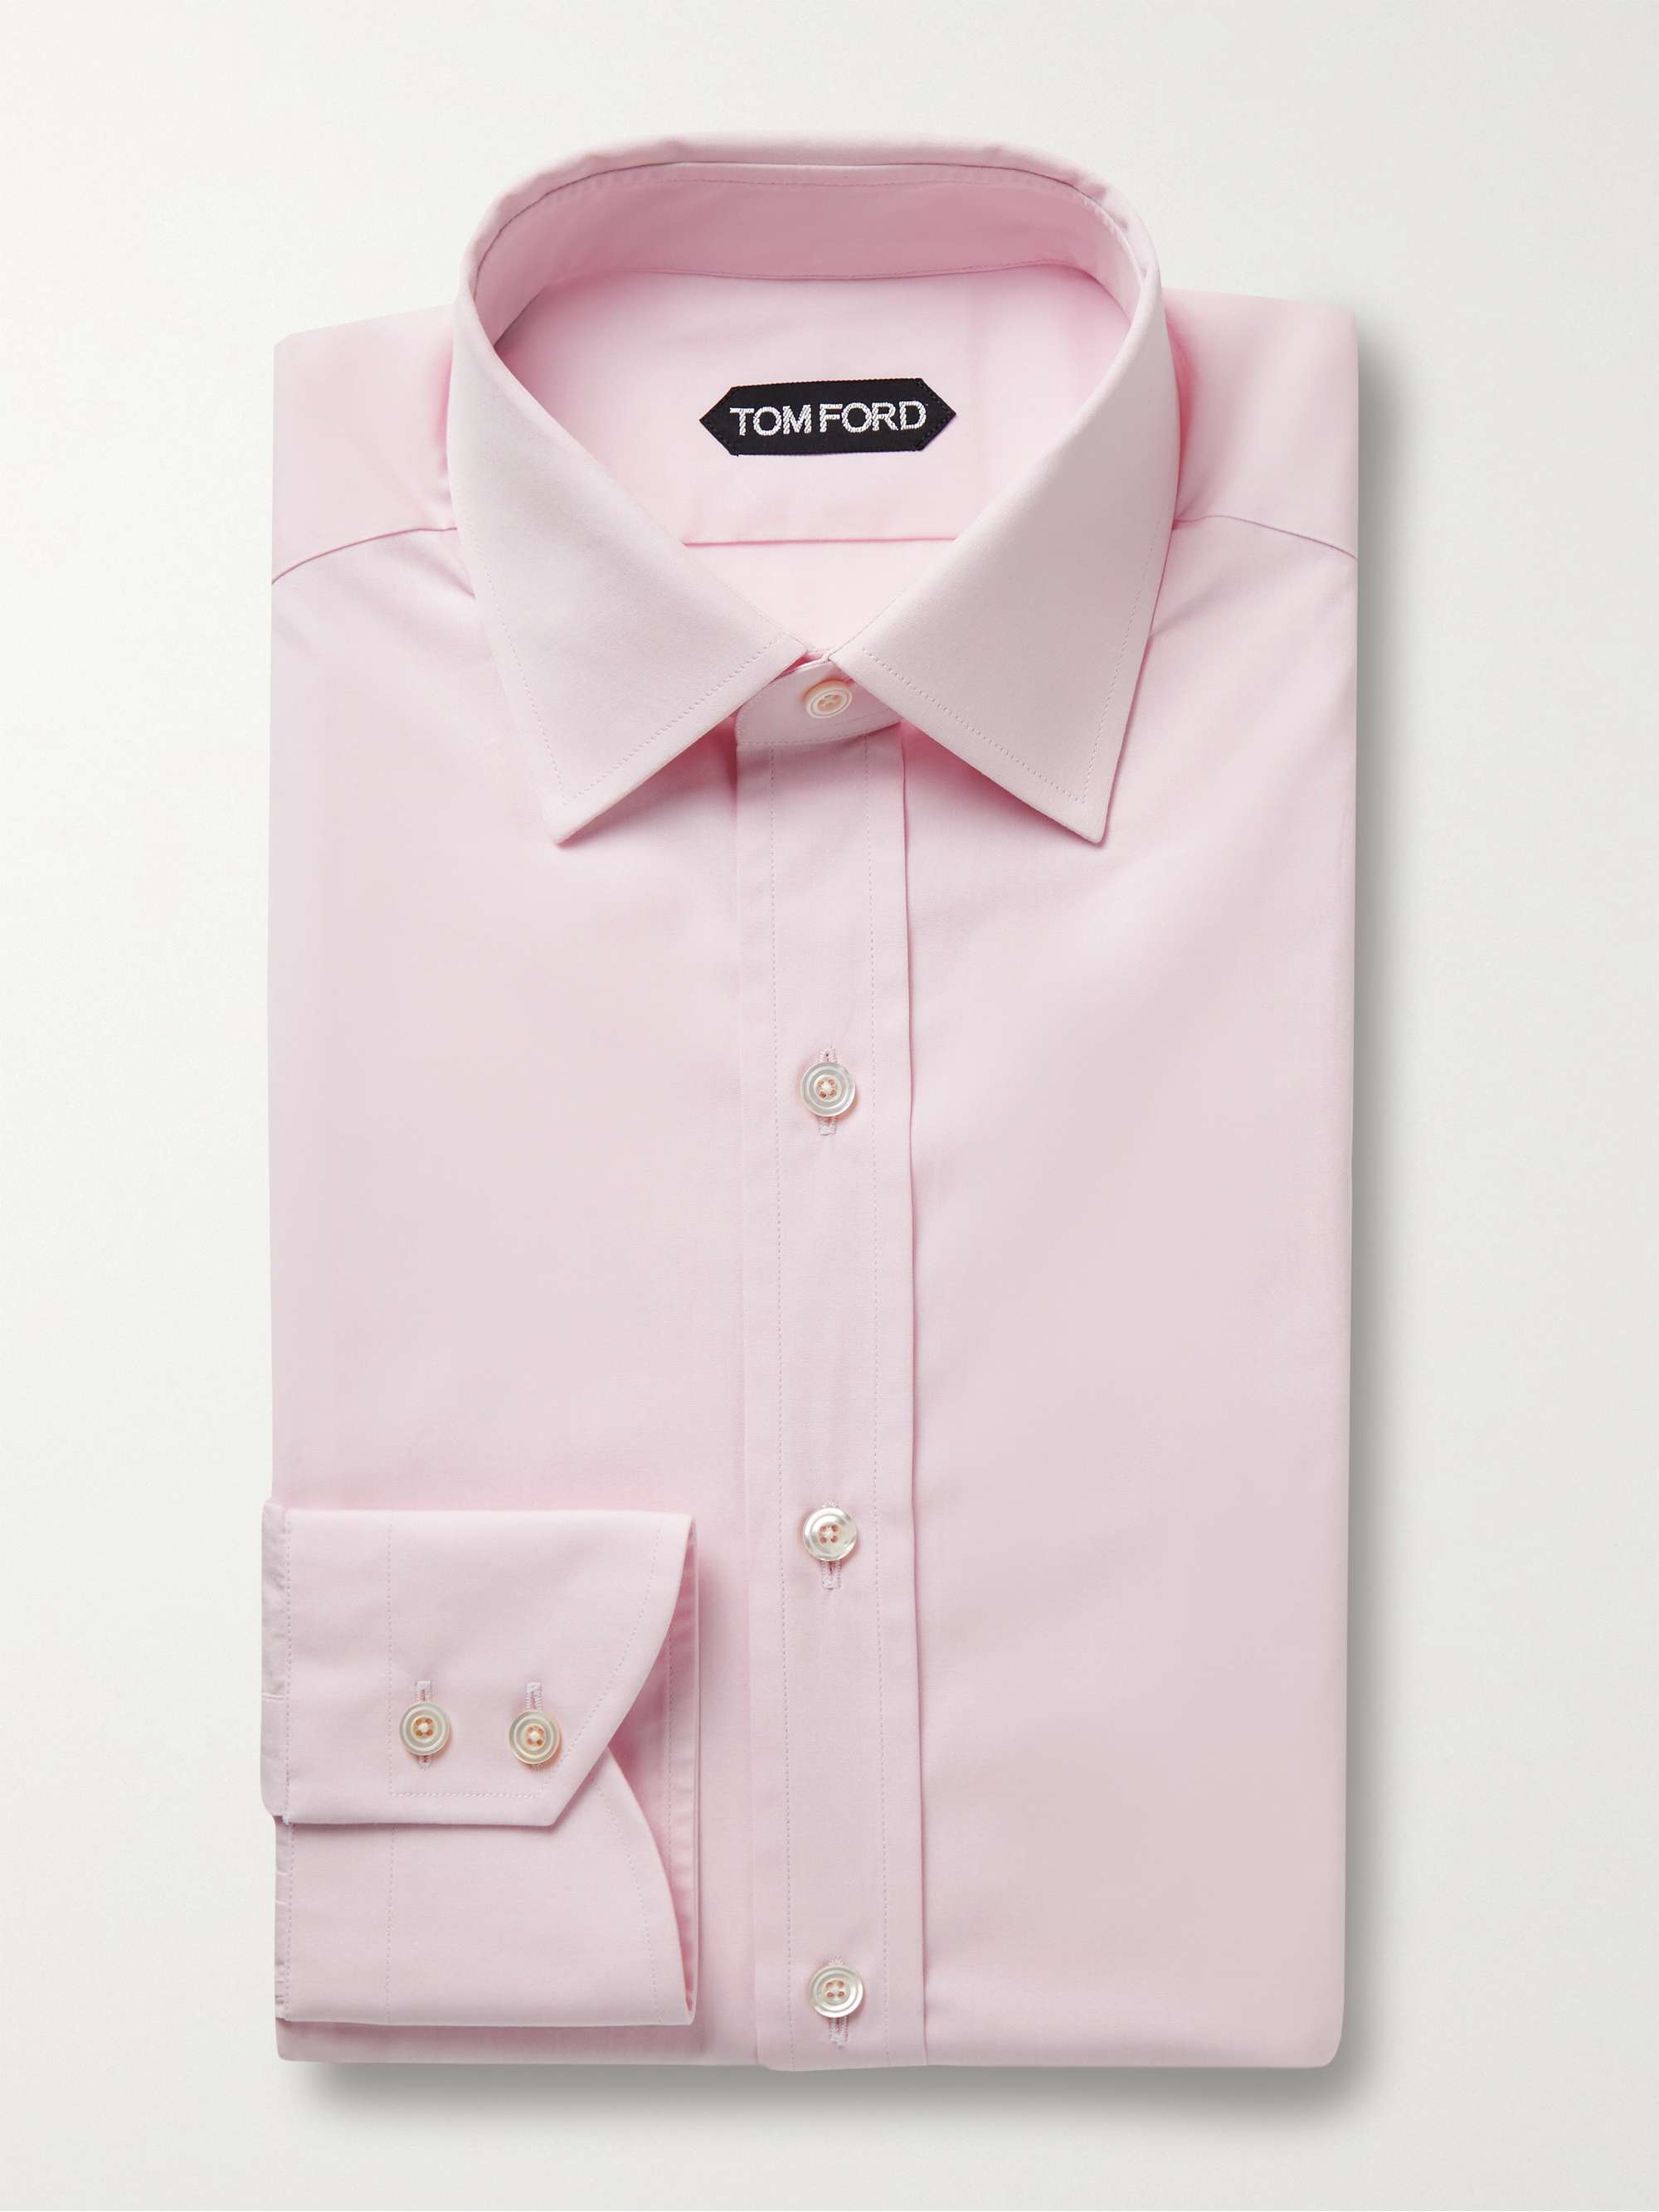 TOM FORD Slim-Fit Cotton Shirt for Men | MR PORTER